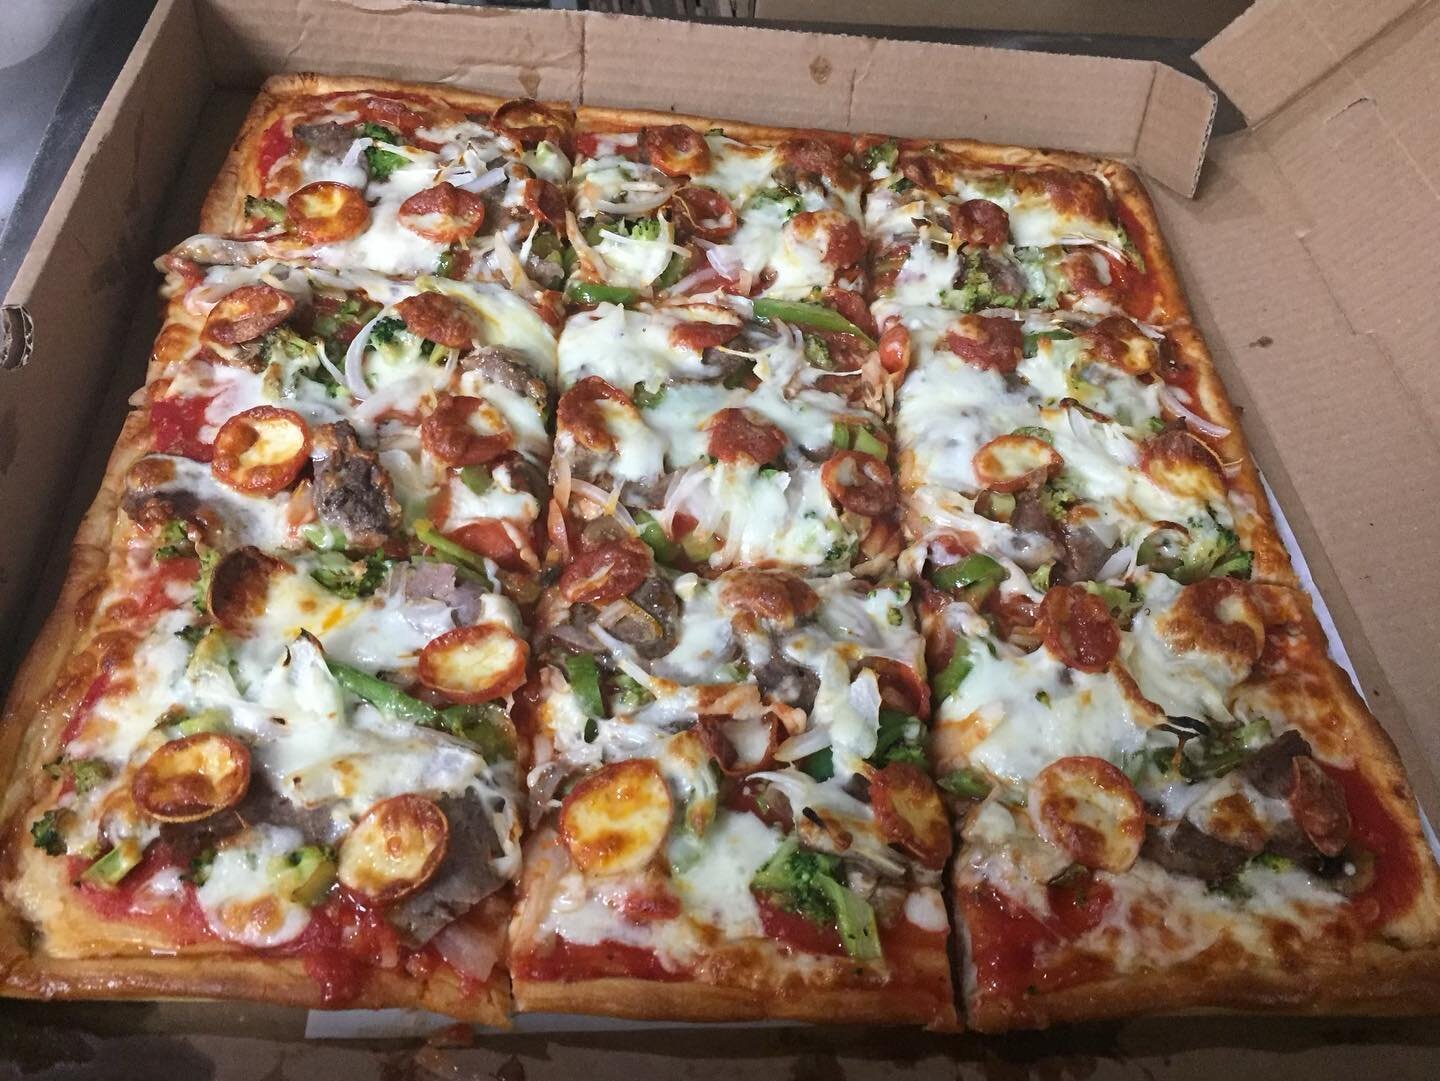 The Loaded Sicilian 🤯😛😛

#pizza #pizzalovers #onebite #norwalk #newcanaan #westport #wilton #classicapizza #cteats #heynorwalk #heystamford #stamford #bestpizza #fcfoodie #cteats #cteatsout #norwalkdmv #heystamford